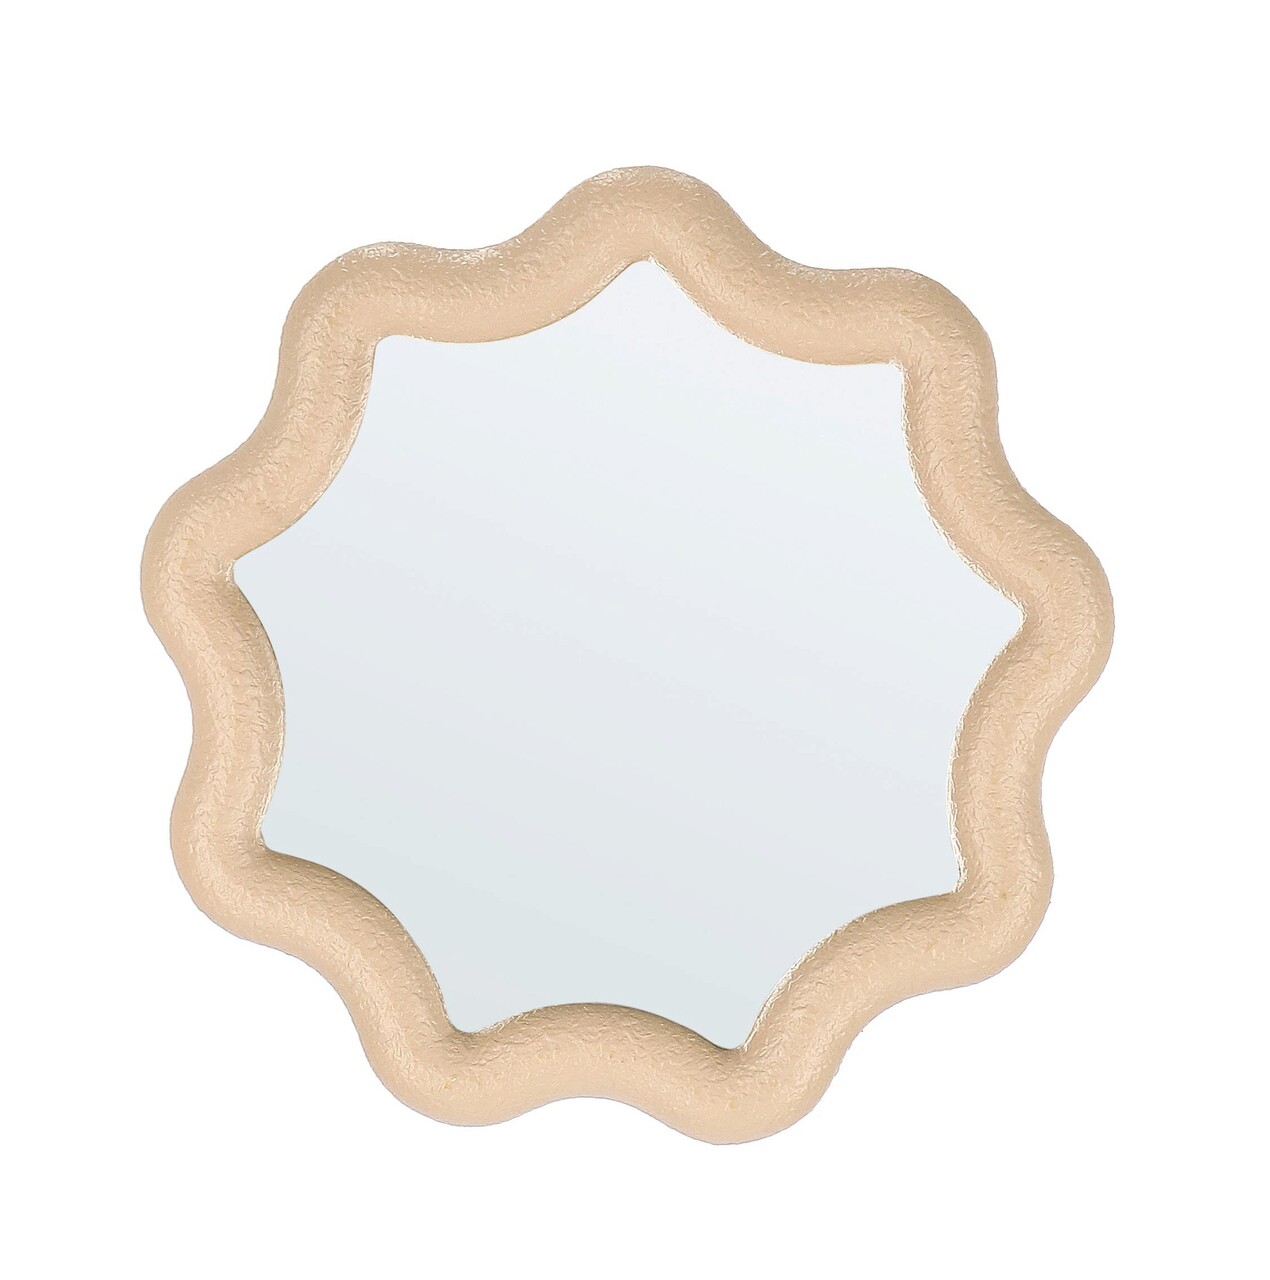 Oglinda decorativa Creamy, Bizzotto, 32x2x32 cm, MDF/sticla, crem